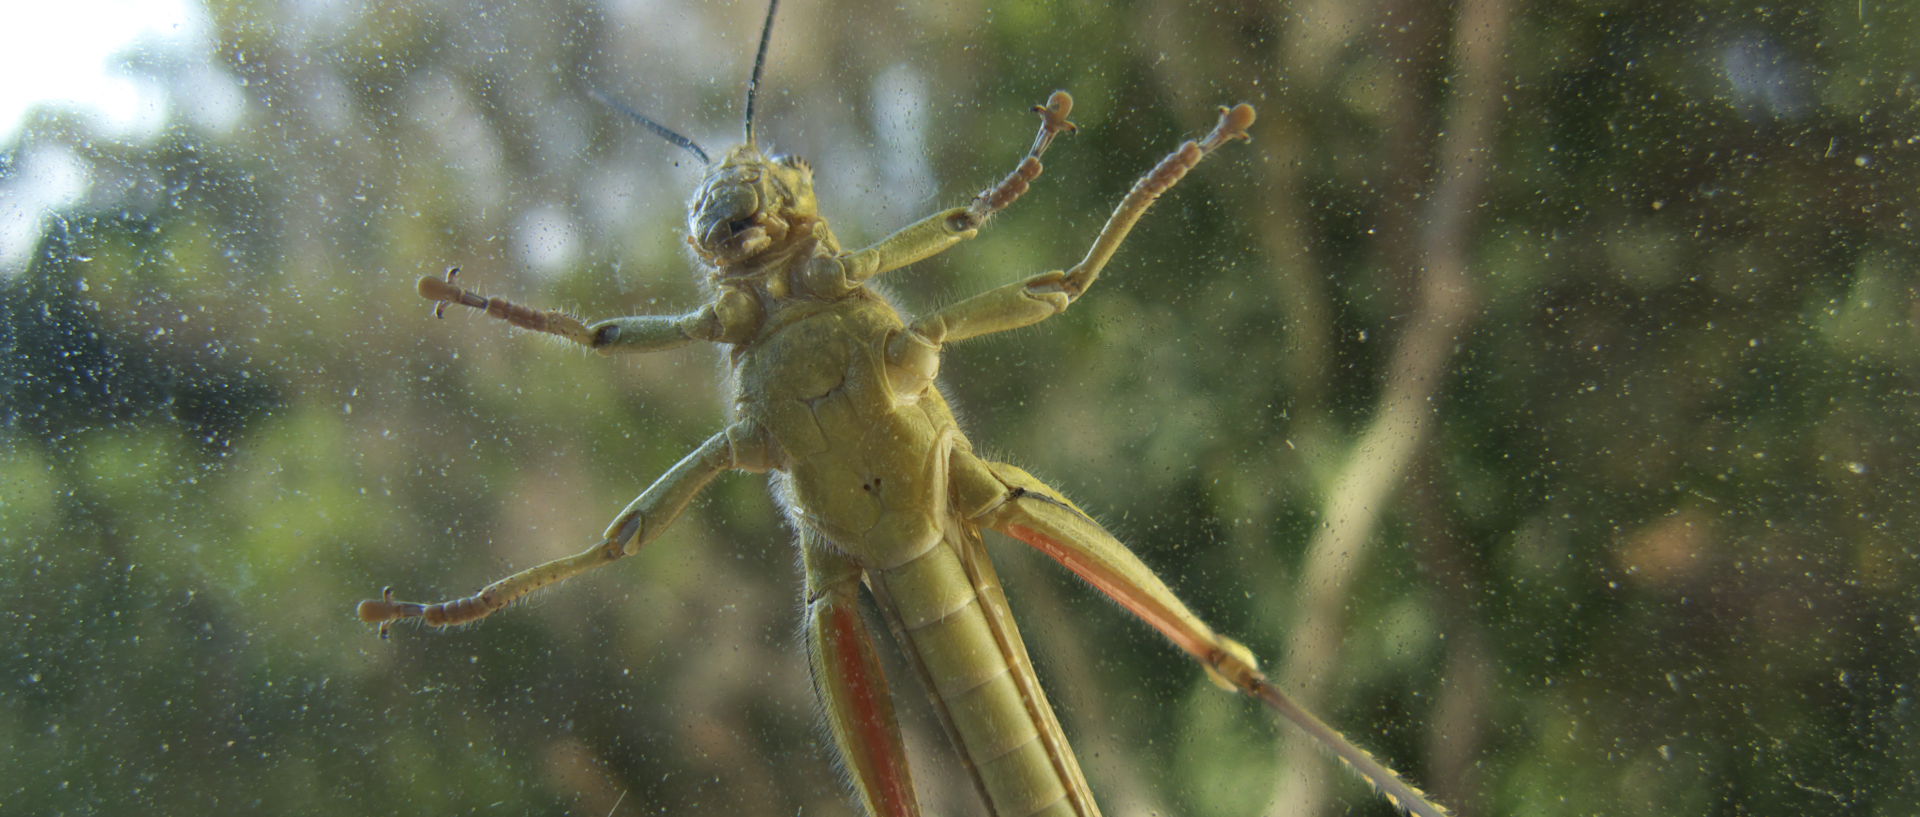 Photo d'insecte, île du Levant, Héliopolis.